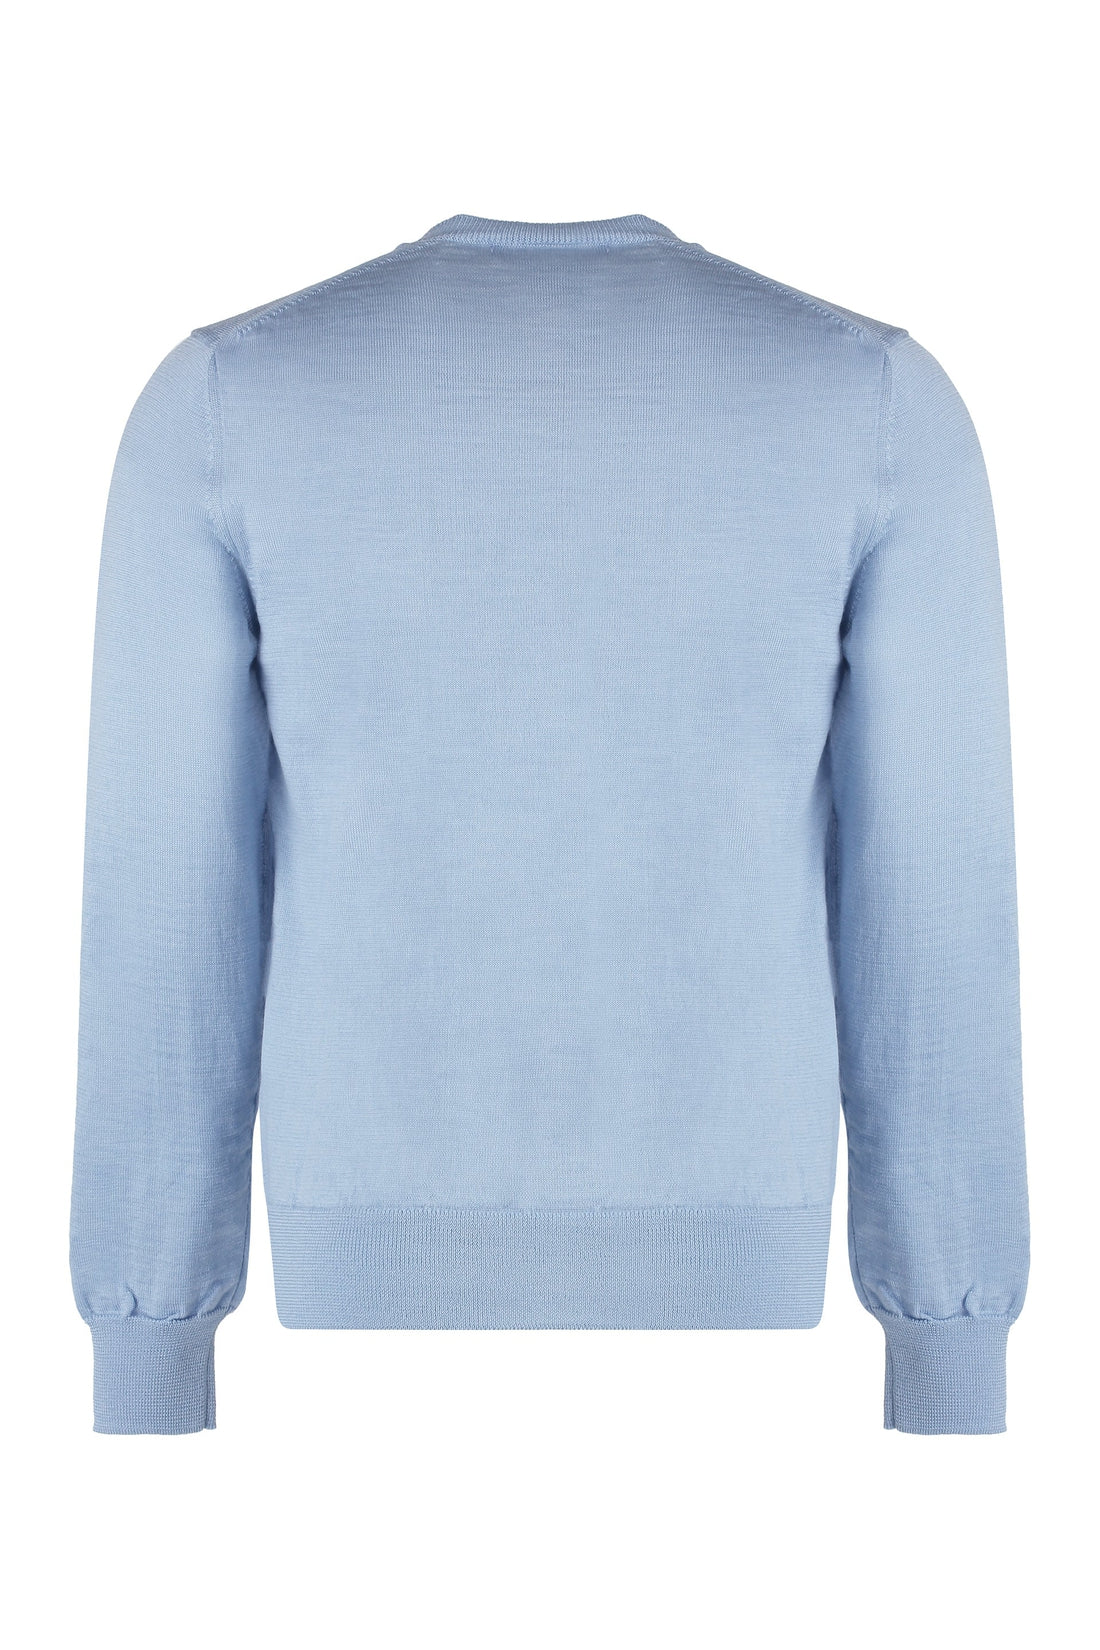 Comme des Garçons SHIRT-OUTLET-SALE-Comme Des Garçons Shirt x Disney - Long sleeve crew-neck sweater-ARCHIVIST